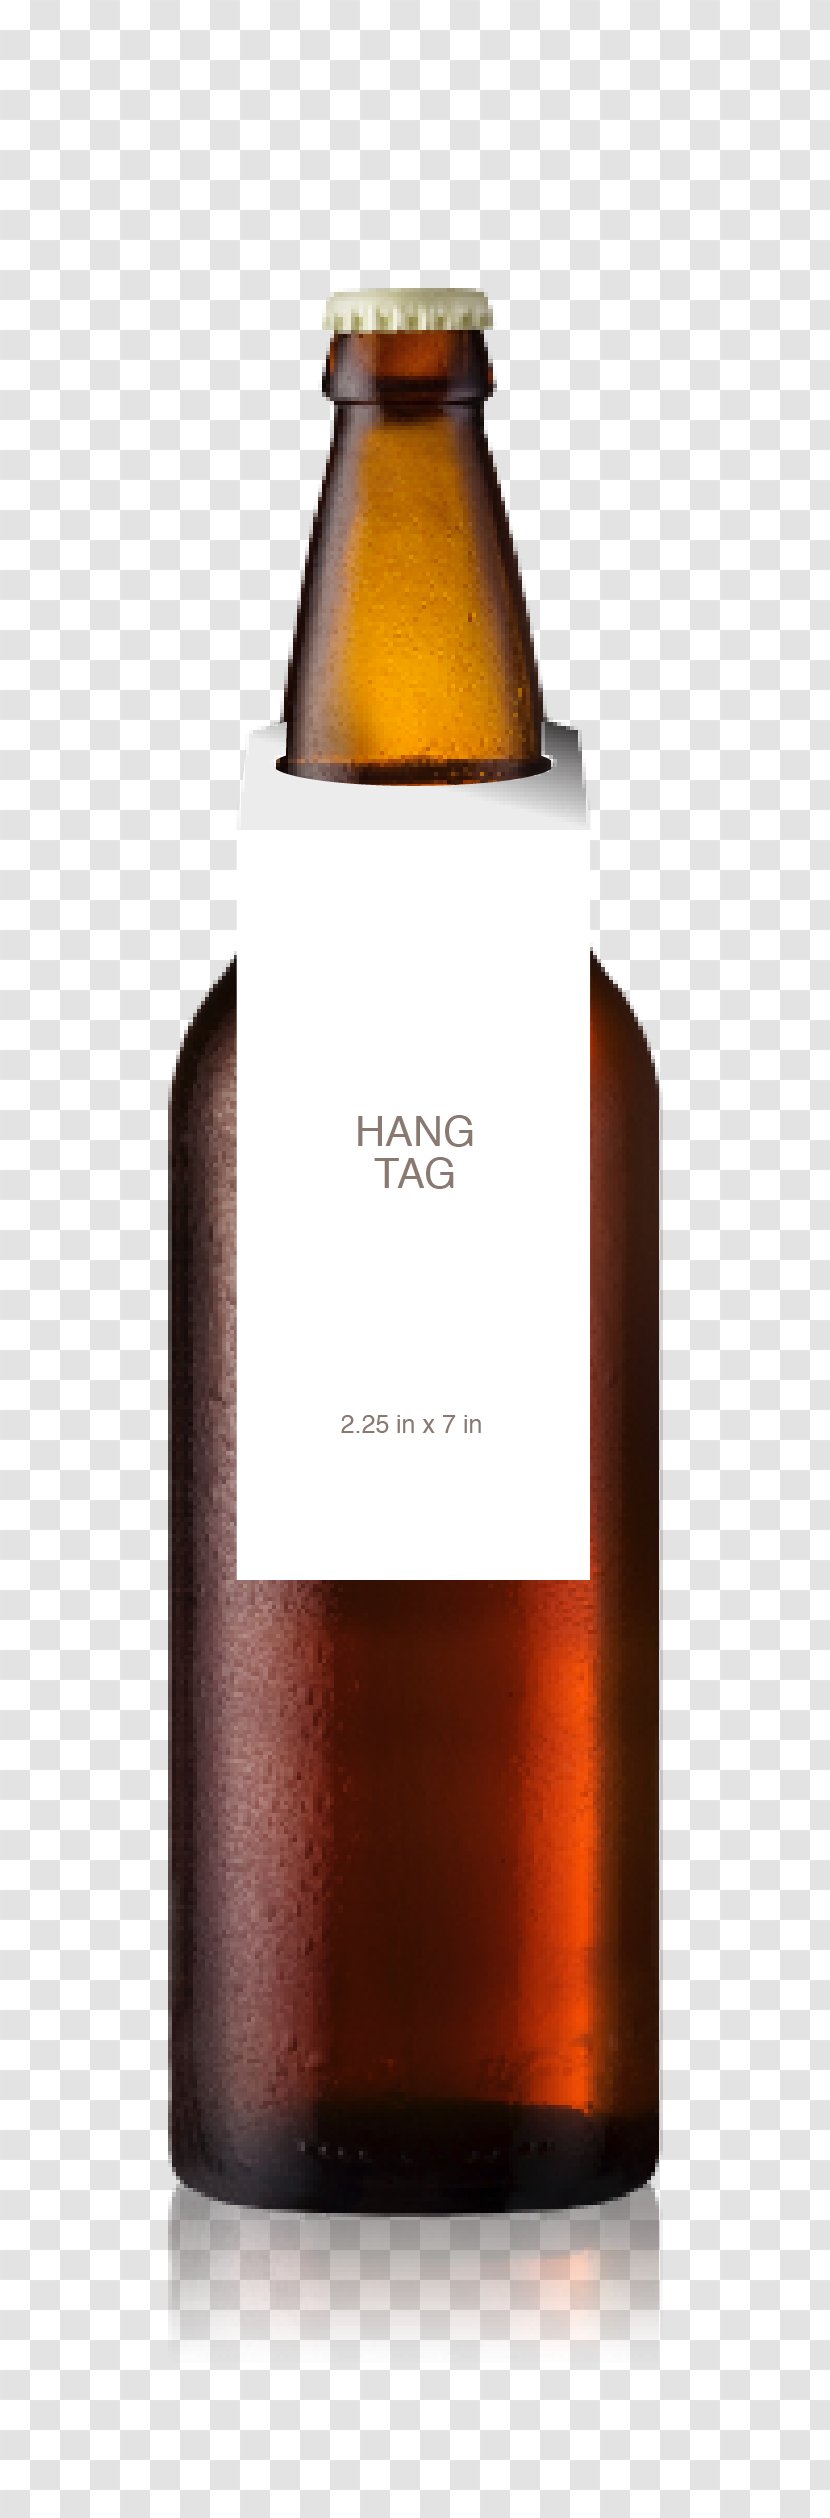 Beer Bottle Wine Distilled Beverage Transparent PNG